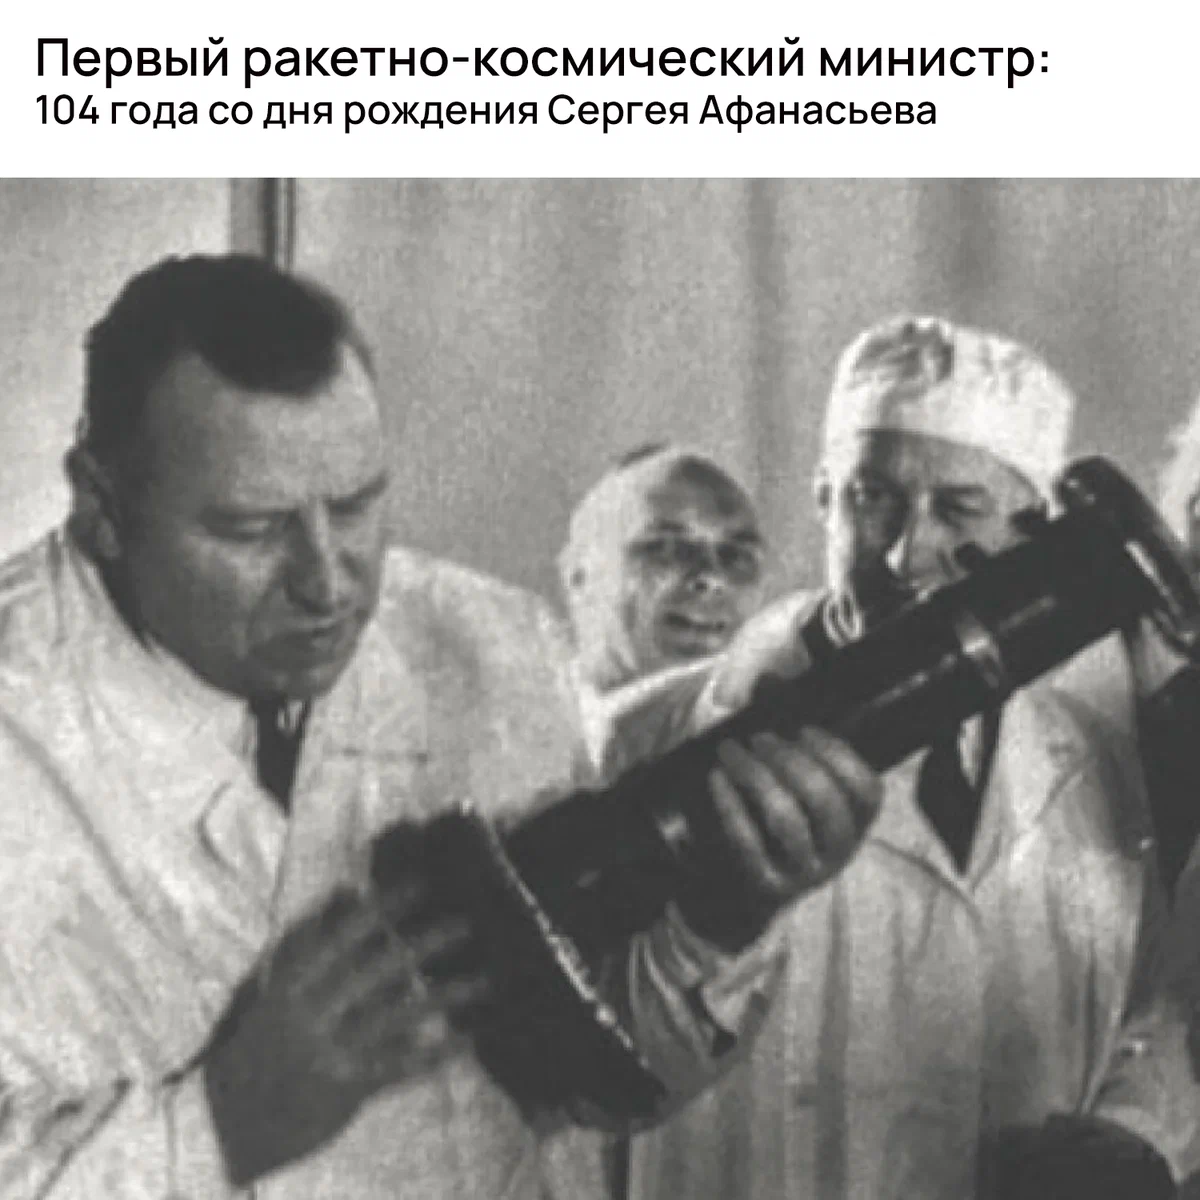 Первый ракетно-космический министр: 104 года со дня рождения Сергея Афанасьева height=1200px width=1200px